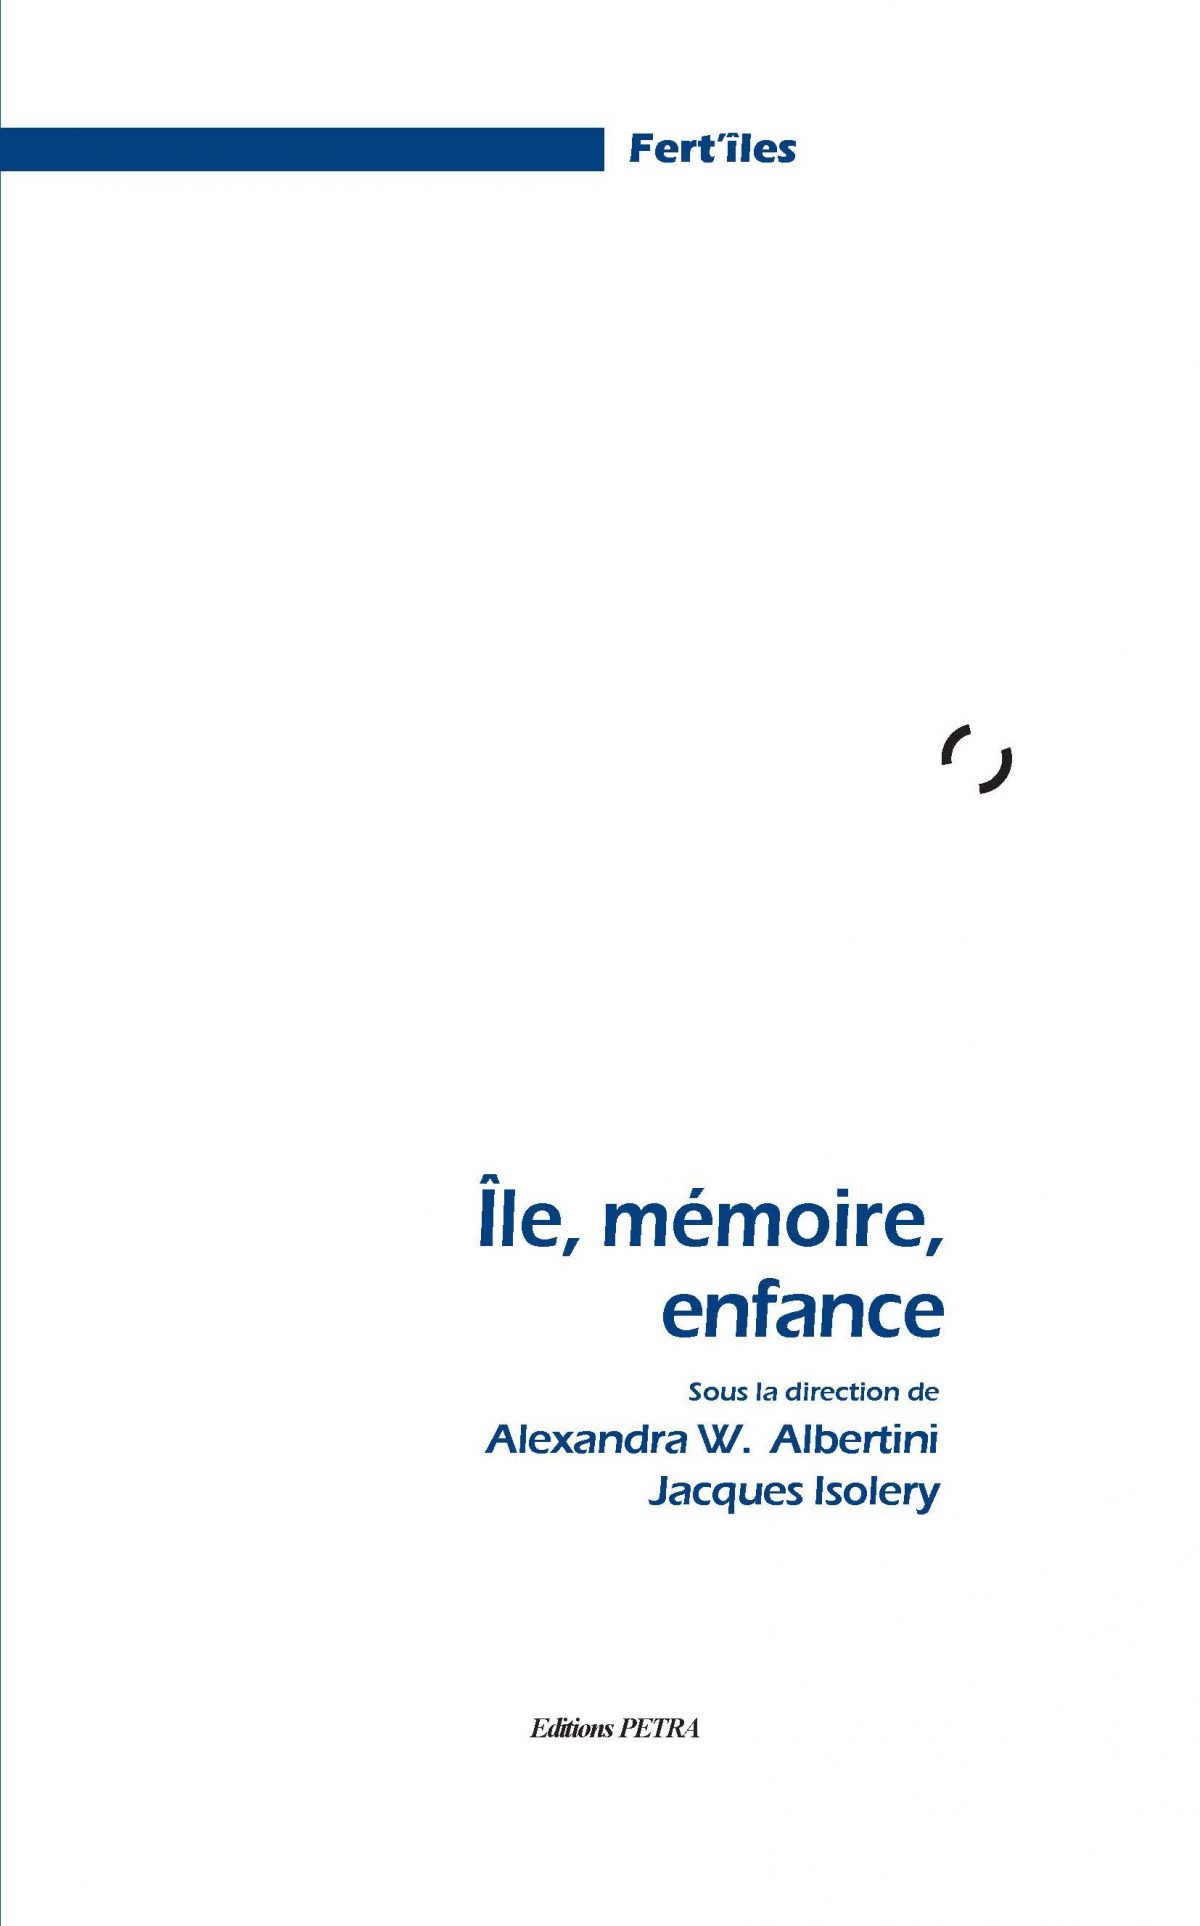 Île, mémoire, enfance, Éditions Pétra, Fert’îles, 2019.